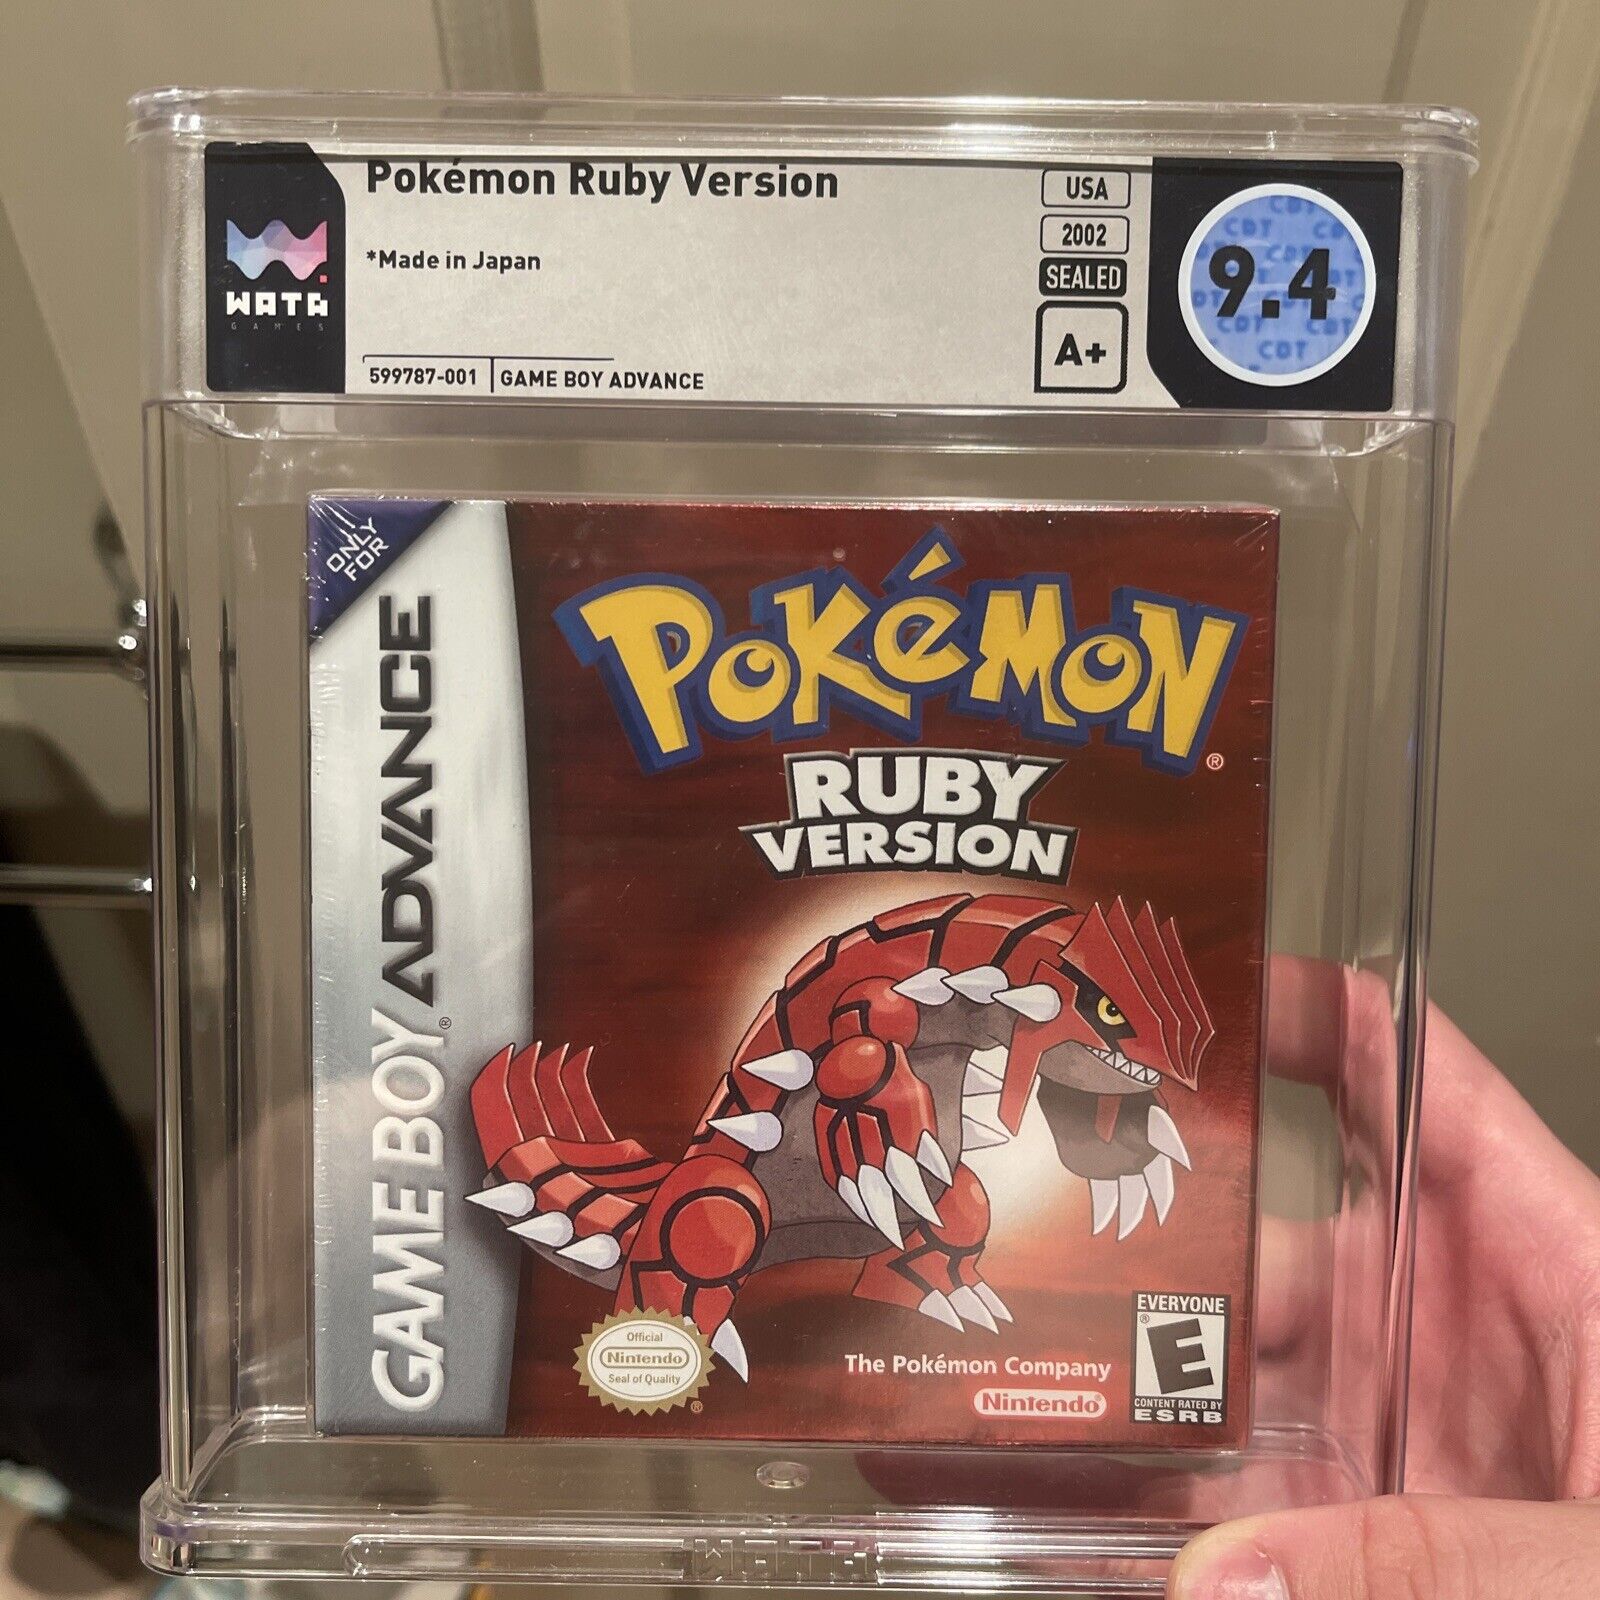 2002 Pokemon Ruby Game Boy Advance Sealed WATA 9.4 Seal Rating A+